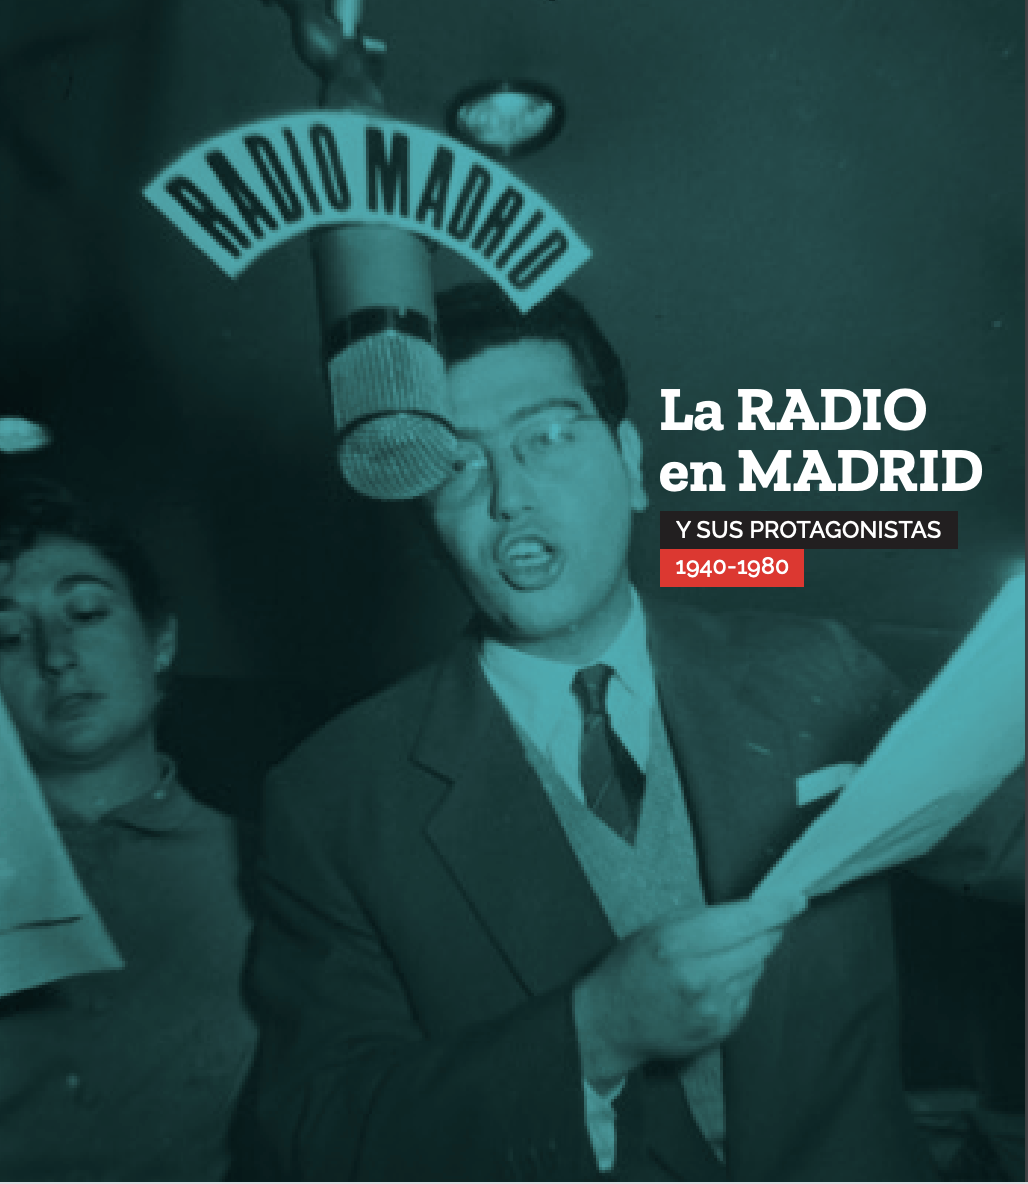 La exposición "La radio en Madrid y sus protagonistas 1940-1980" repasa la historia del medio. Foto: Comunidad de Madrid